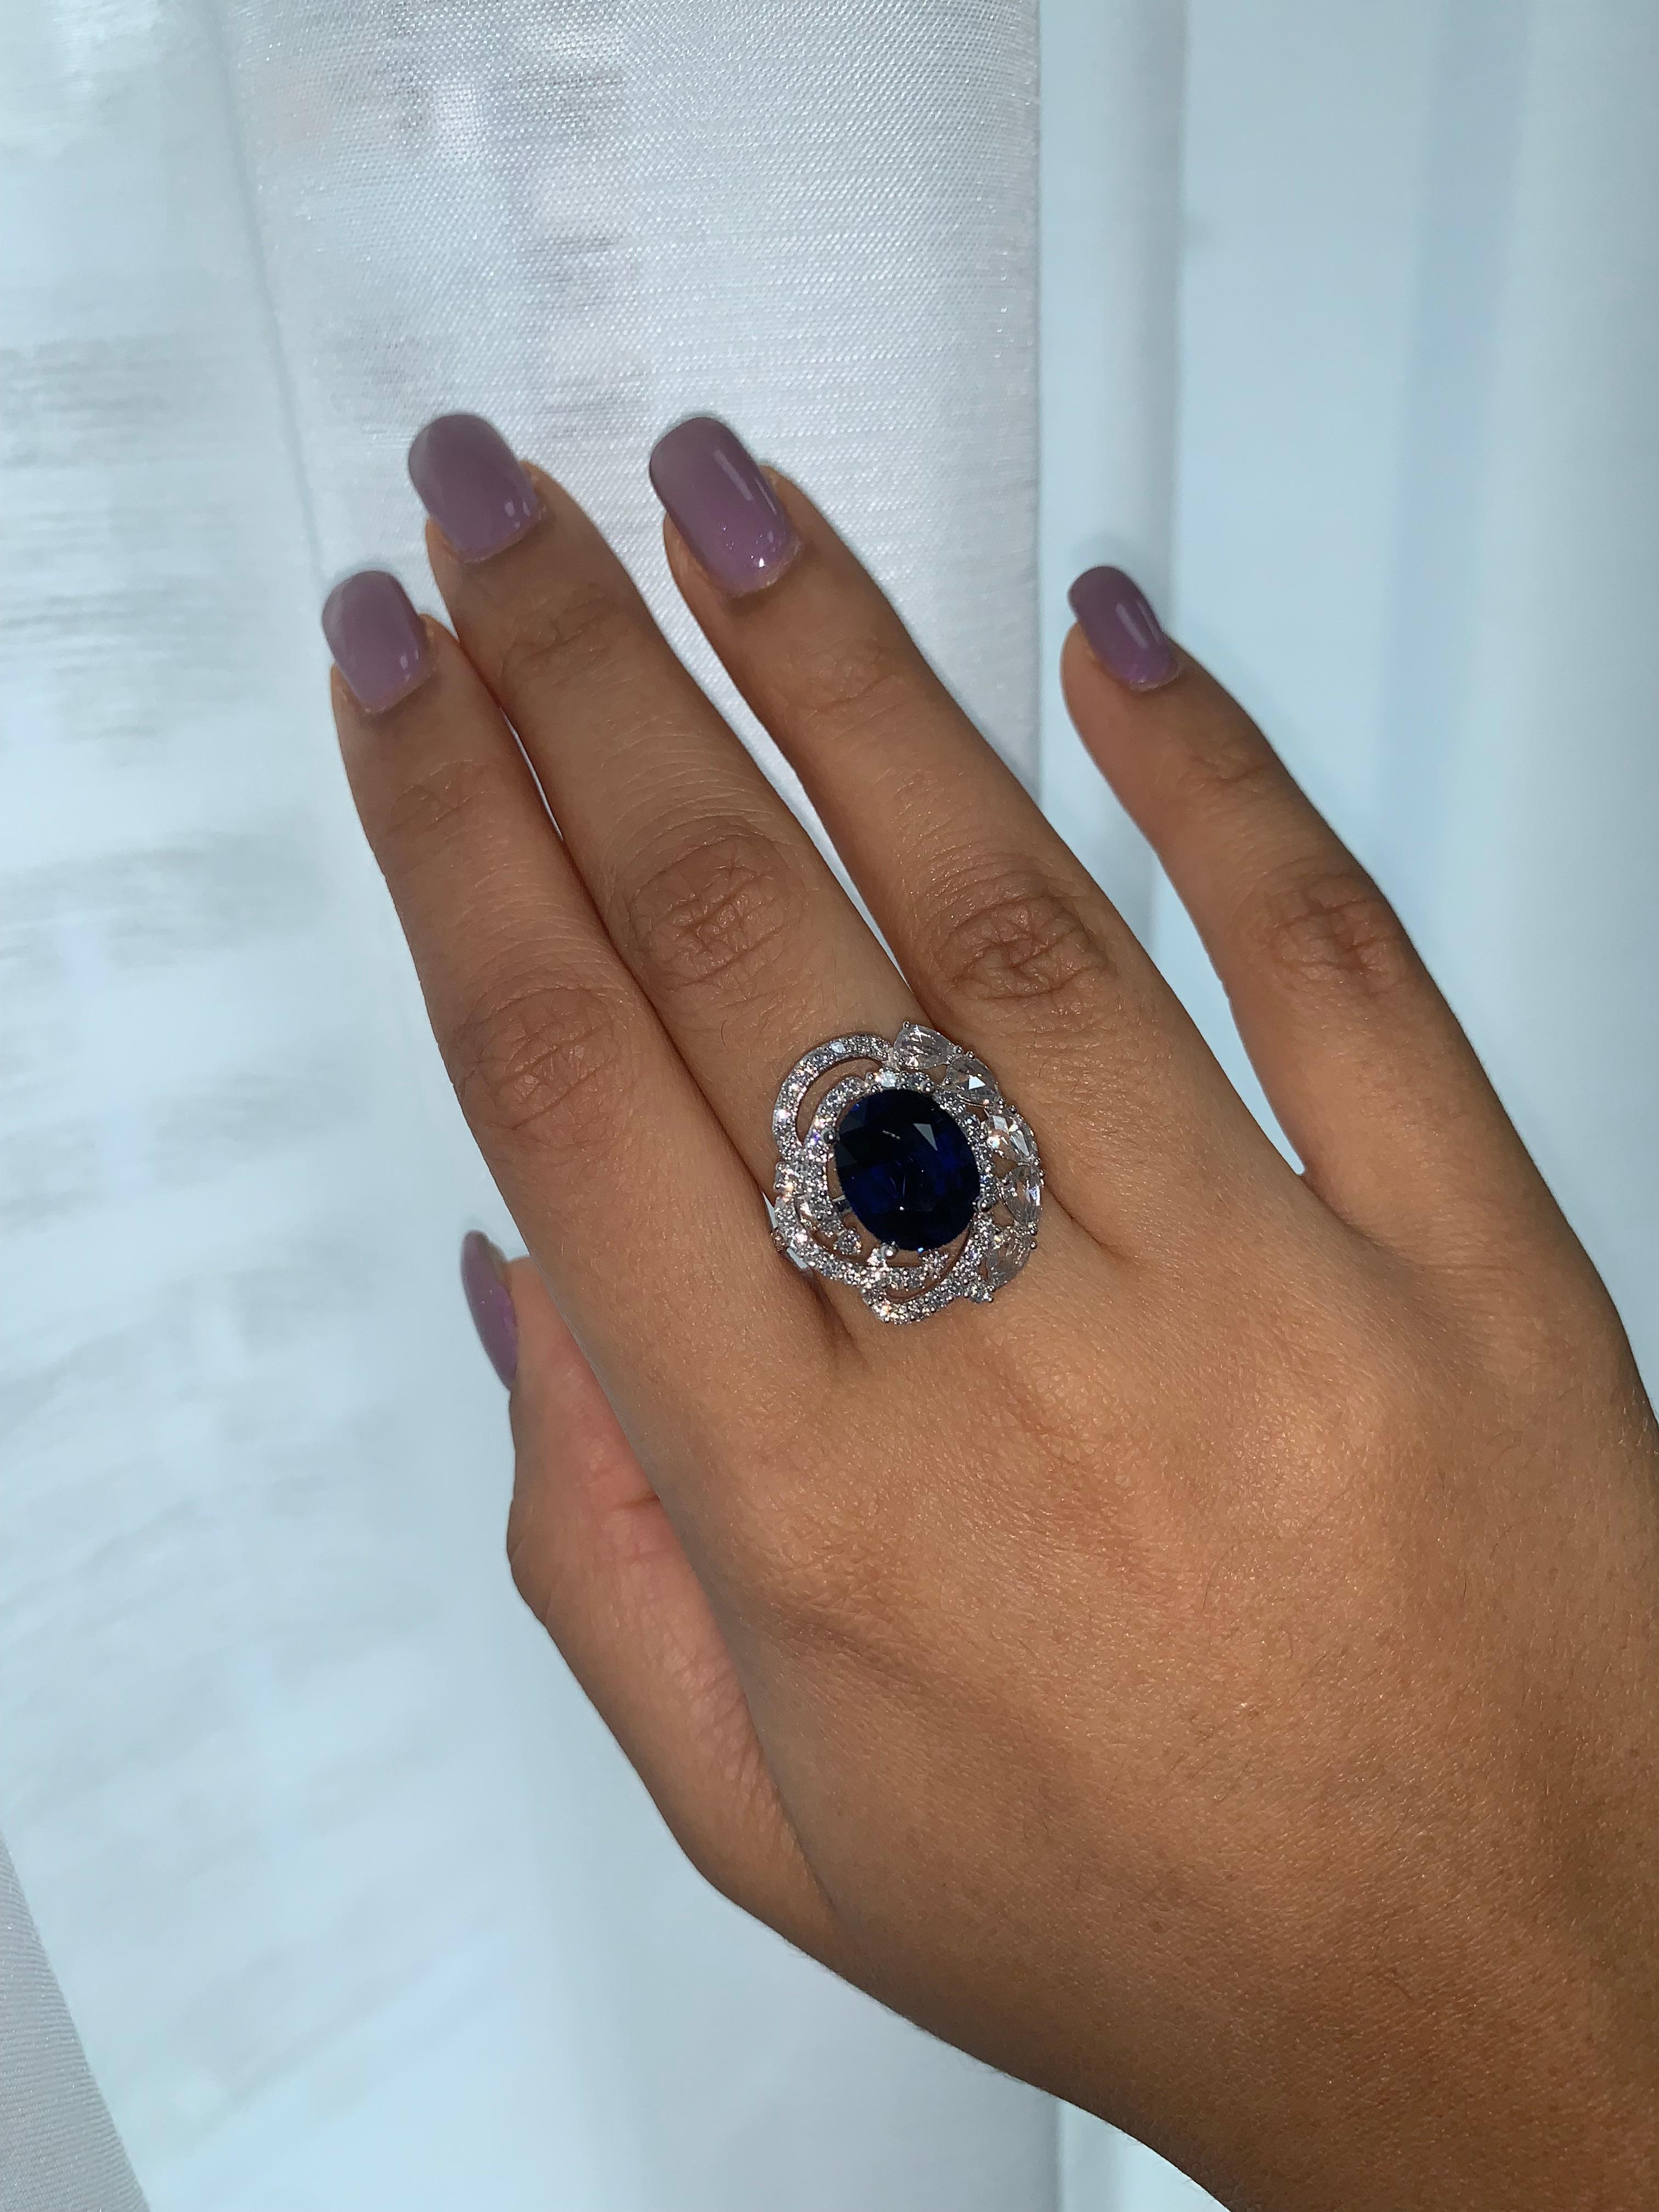 Bague en saphir royal de Sunita Nahata Fine Design. Cette magnifique pierre précieuse est complétée de manière unique par des diamants flottants de taille rose et des diamants pavés sur la bague. Bague royale pour une occasion spéciale. 

Bague en